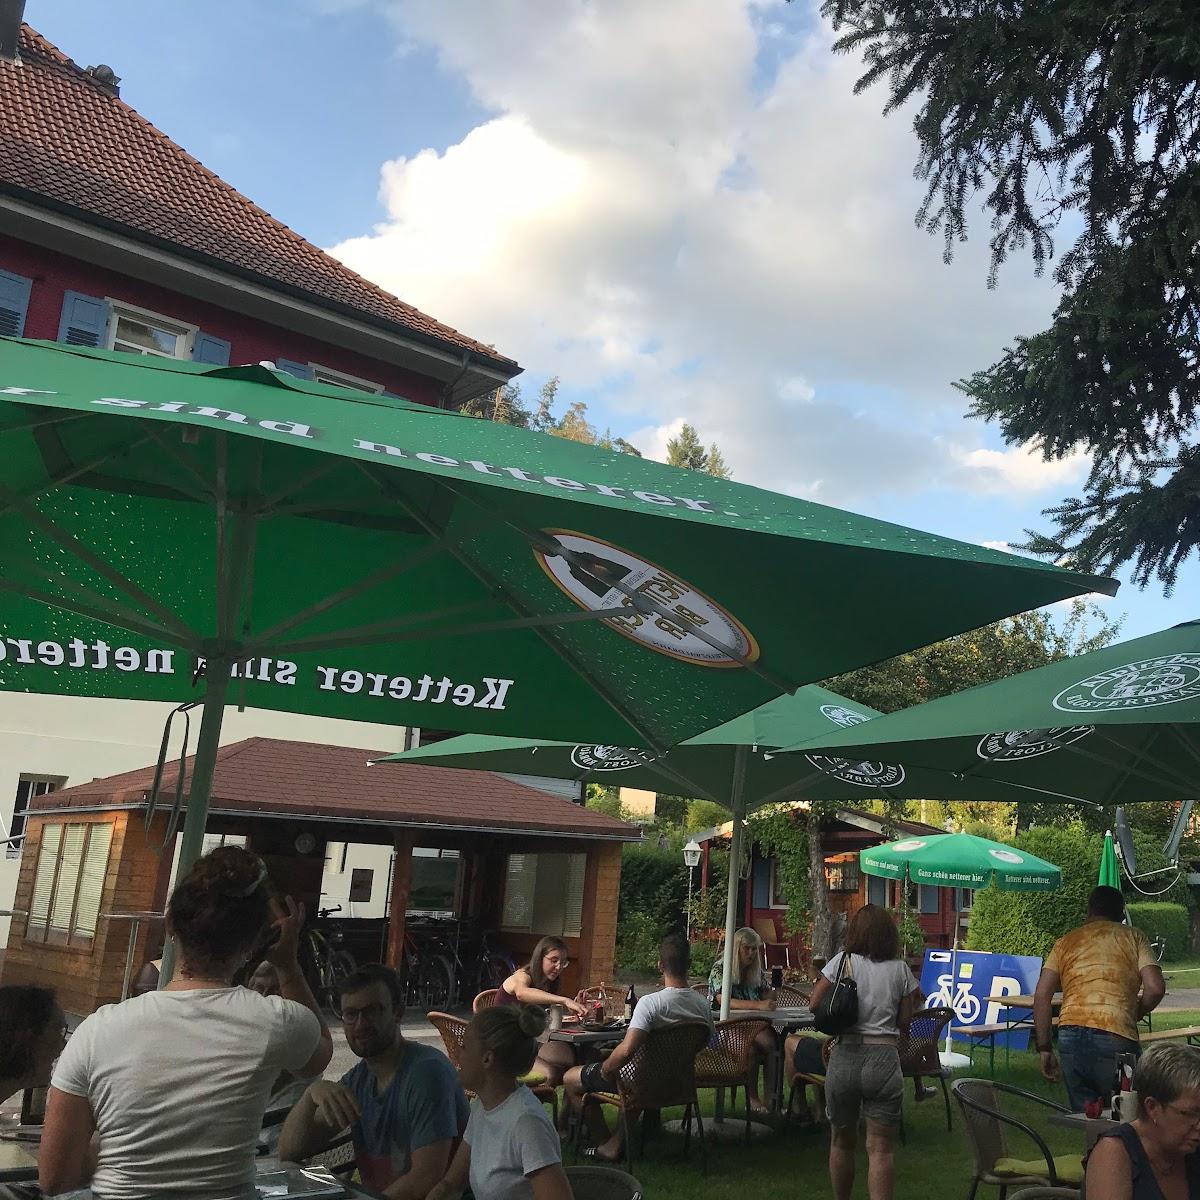 Restaurant "Campingplatz Rosenlaube GbR" in Schiltach